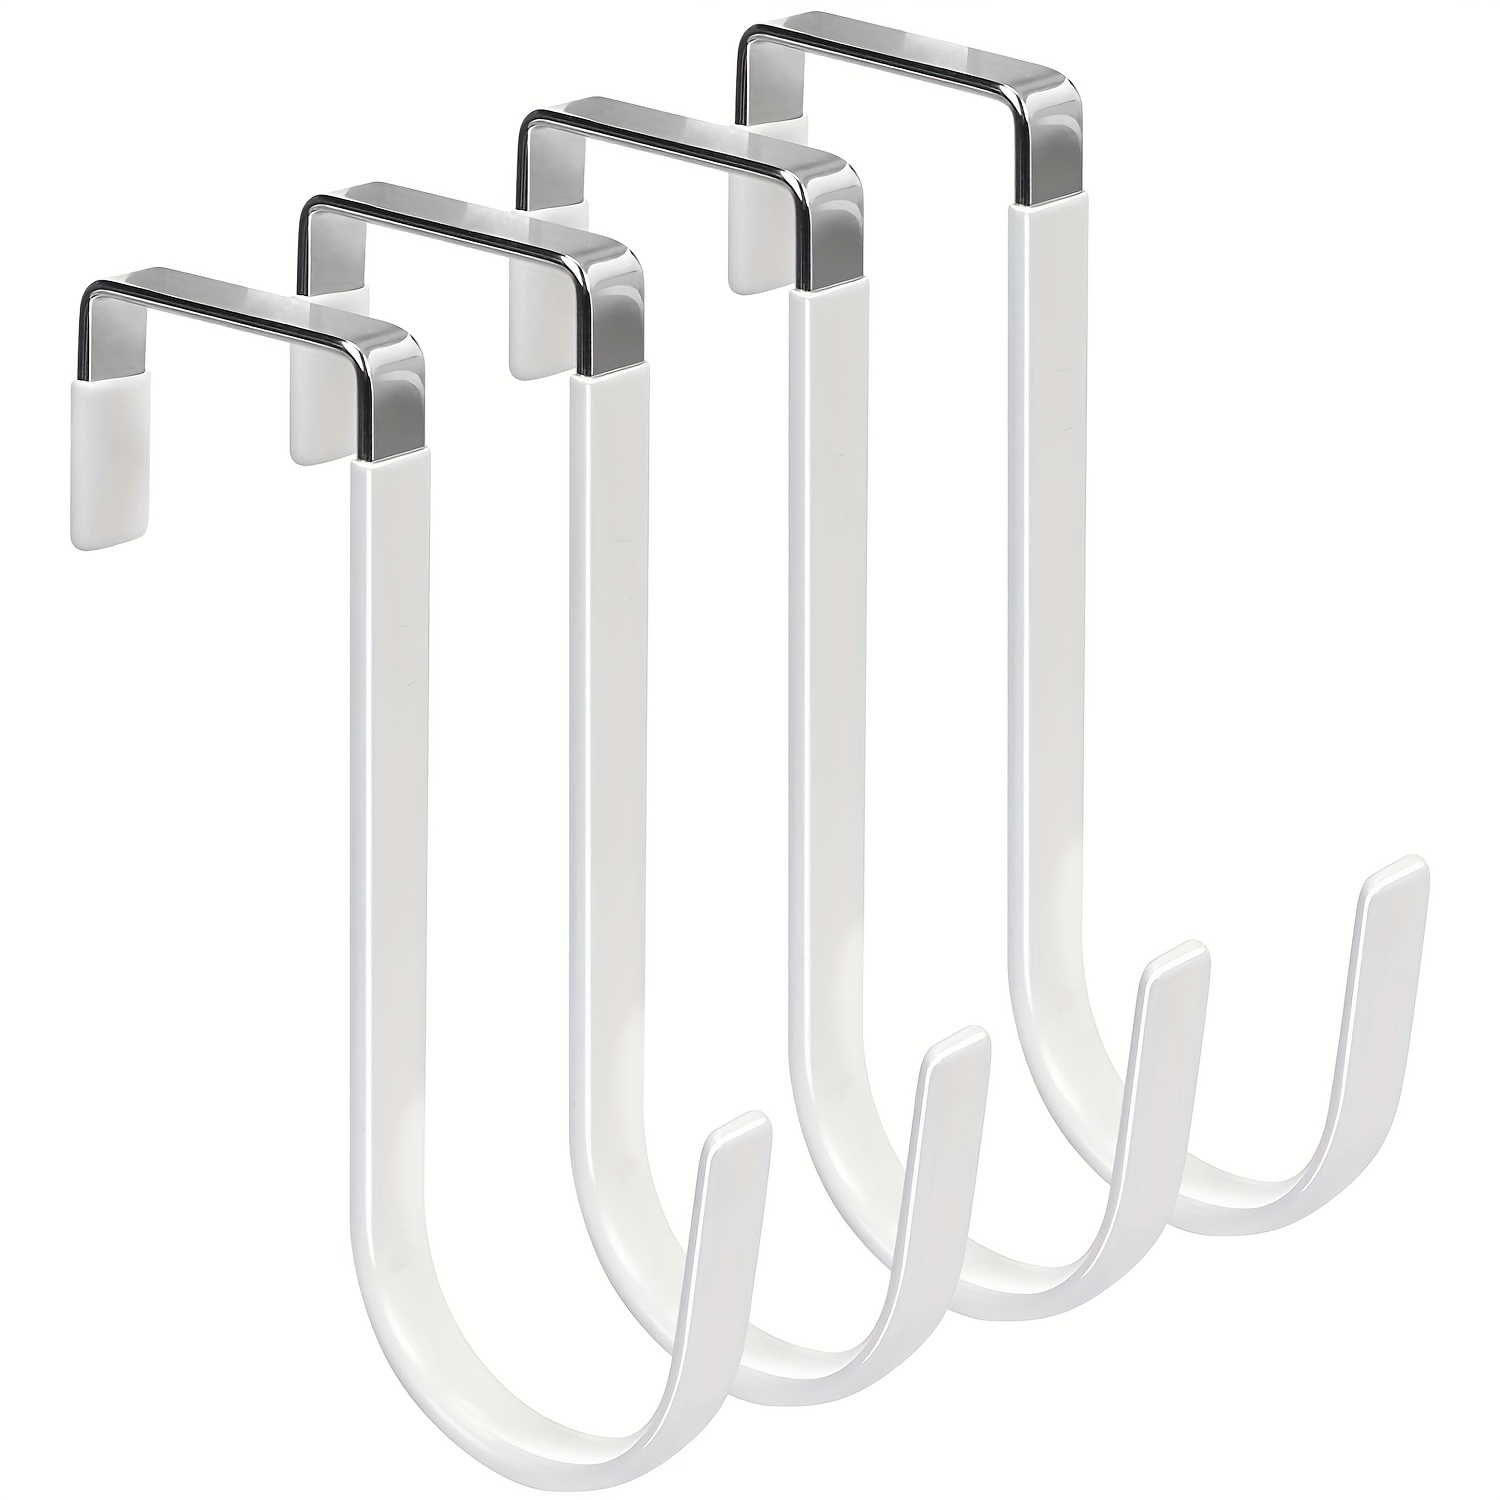 

Over The Door Hook - 4pcs Single Hooks Hanger Metal For Hanging Towel Coats Clothes Hats Bags Bathroom